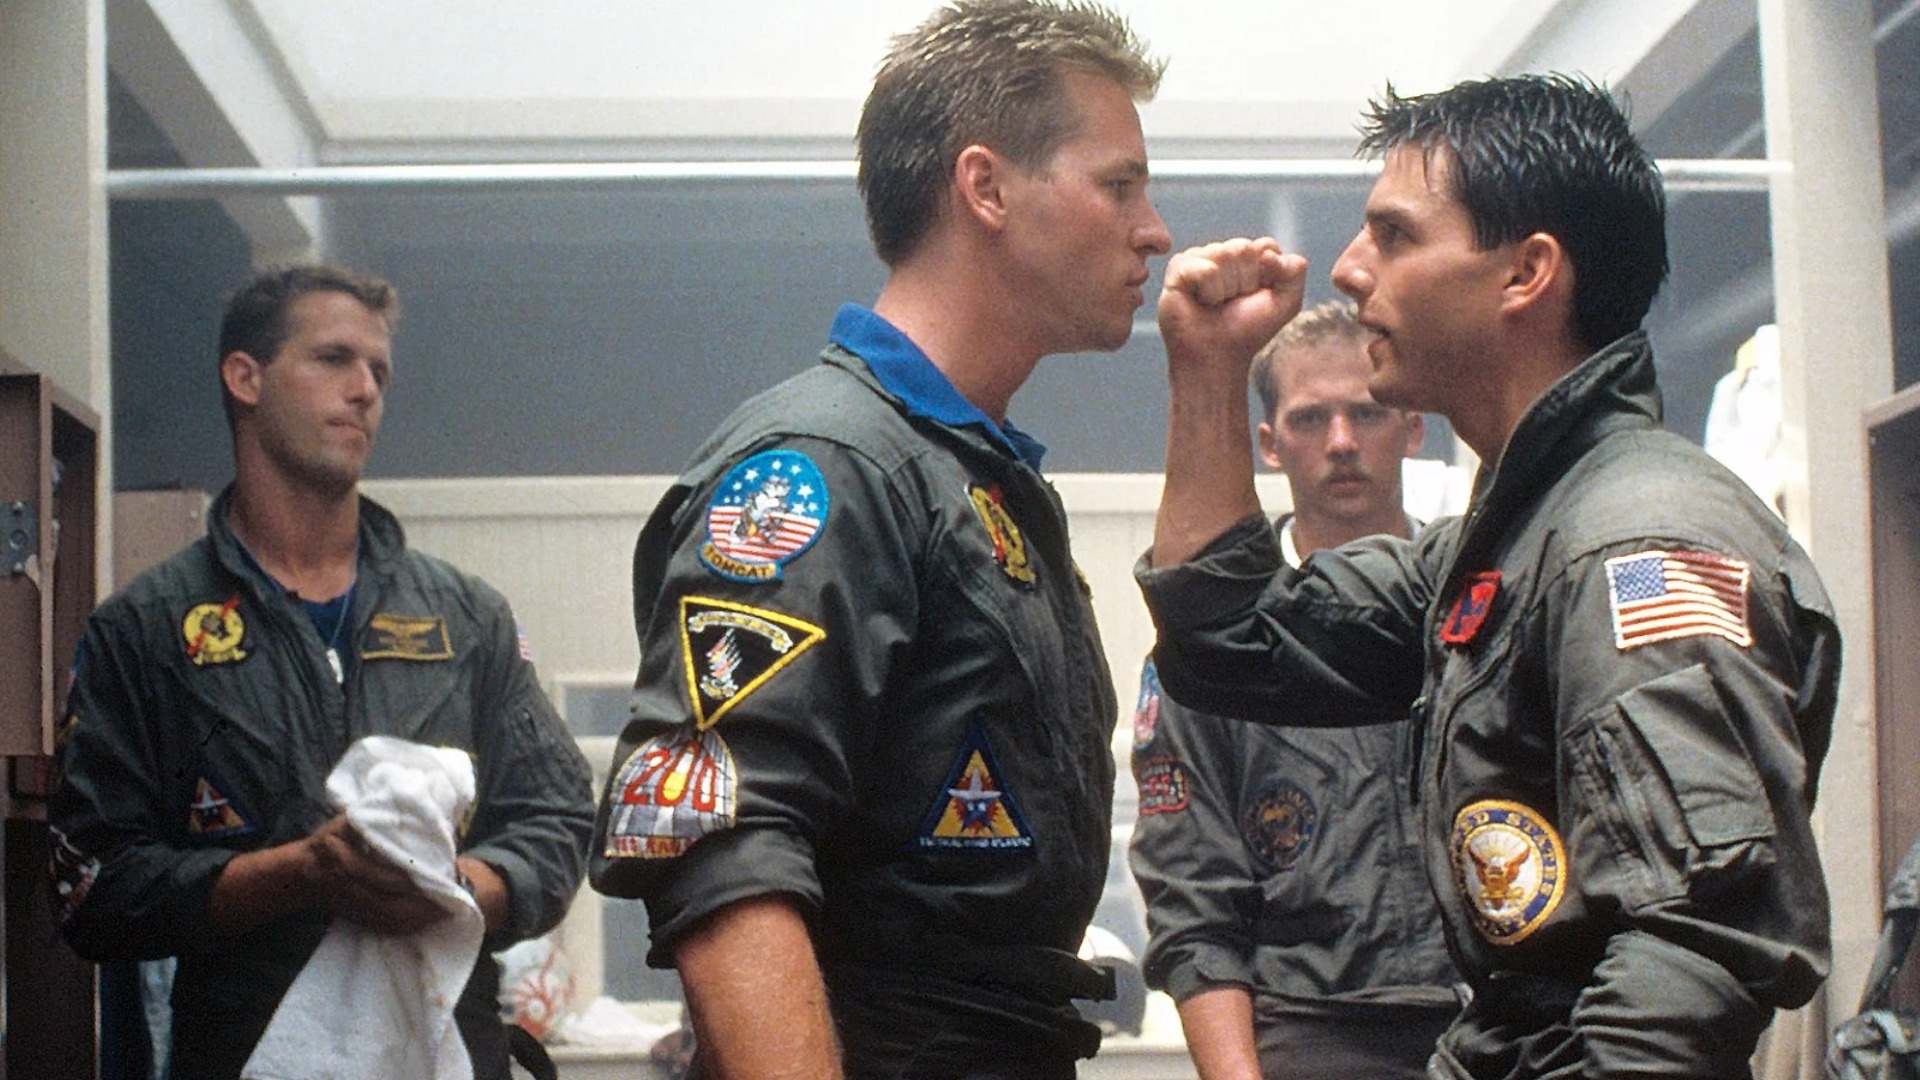 Top Gun: Maverick director lifts lid on filming Iceman and Maverick’s “emotional” reunion